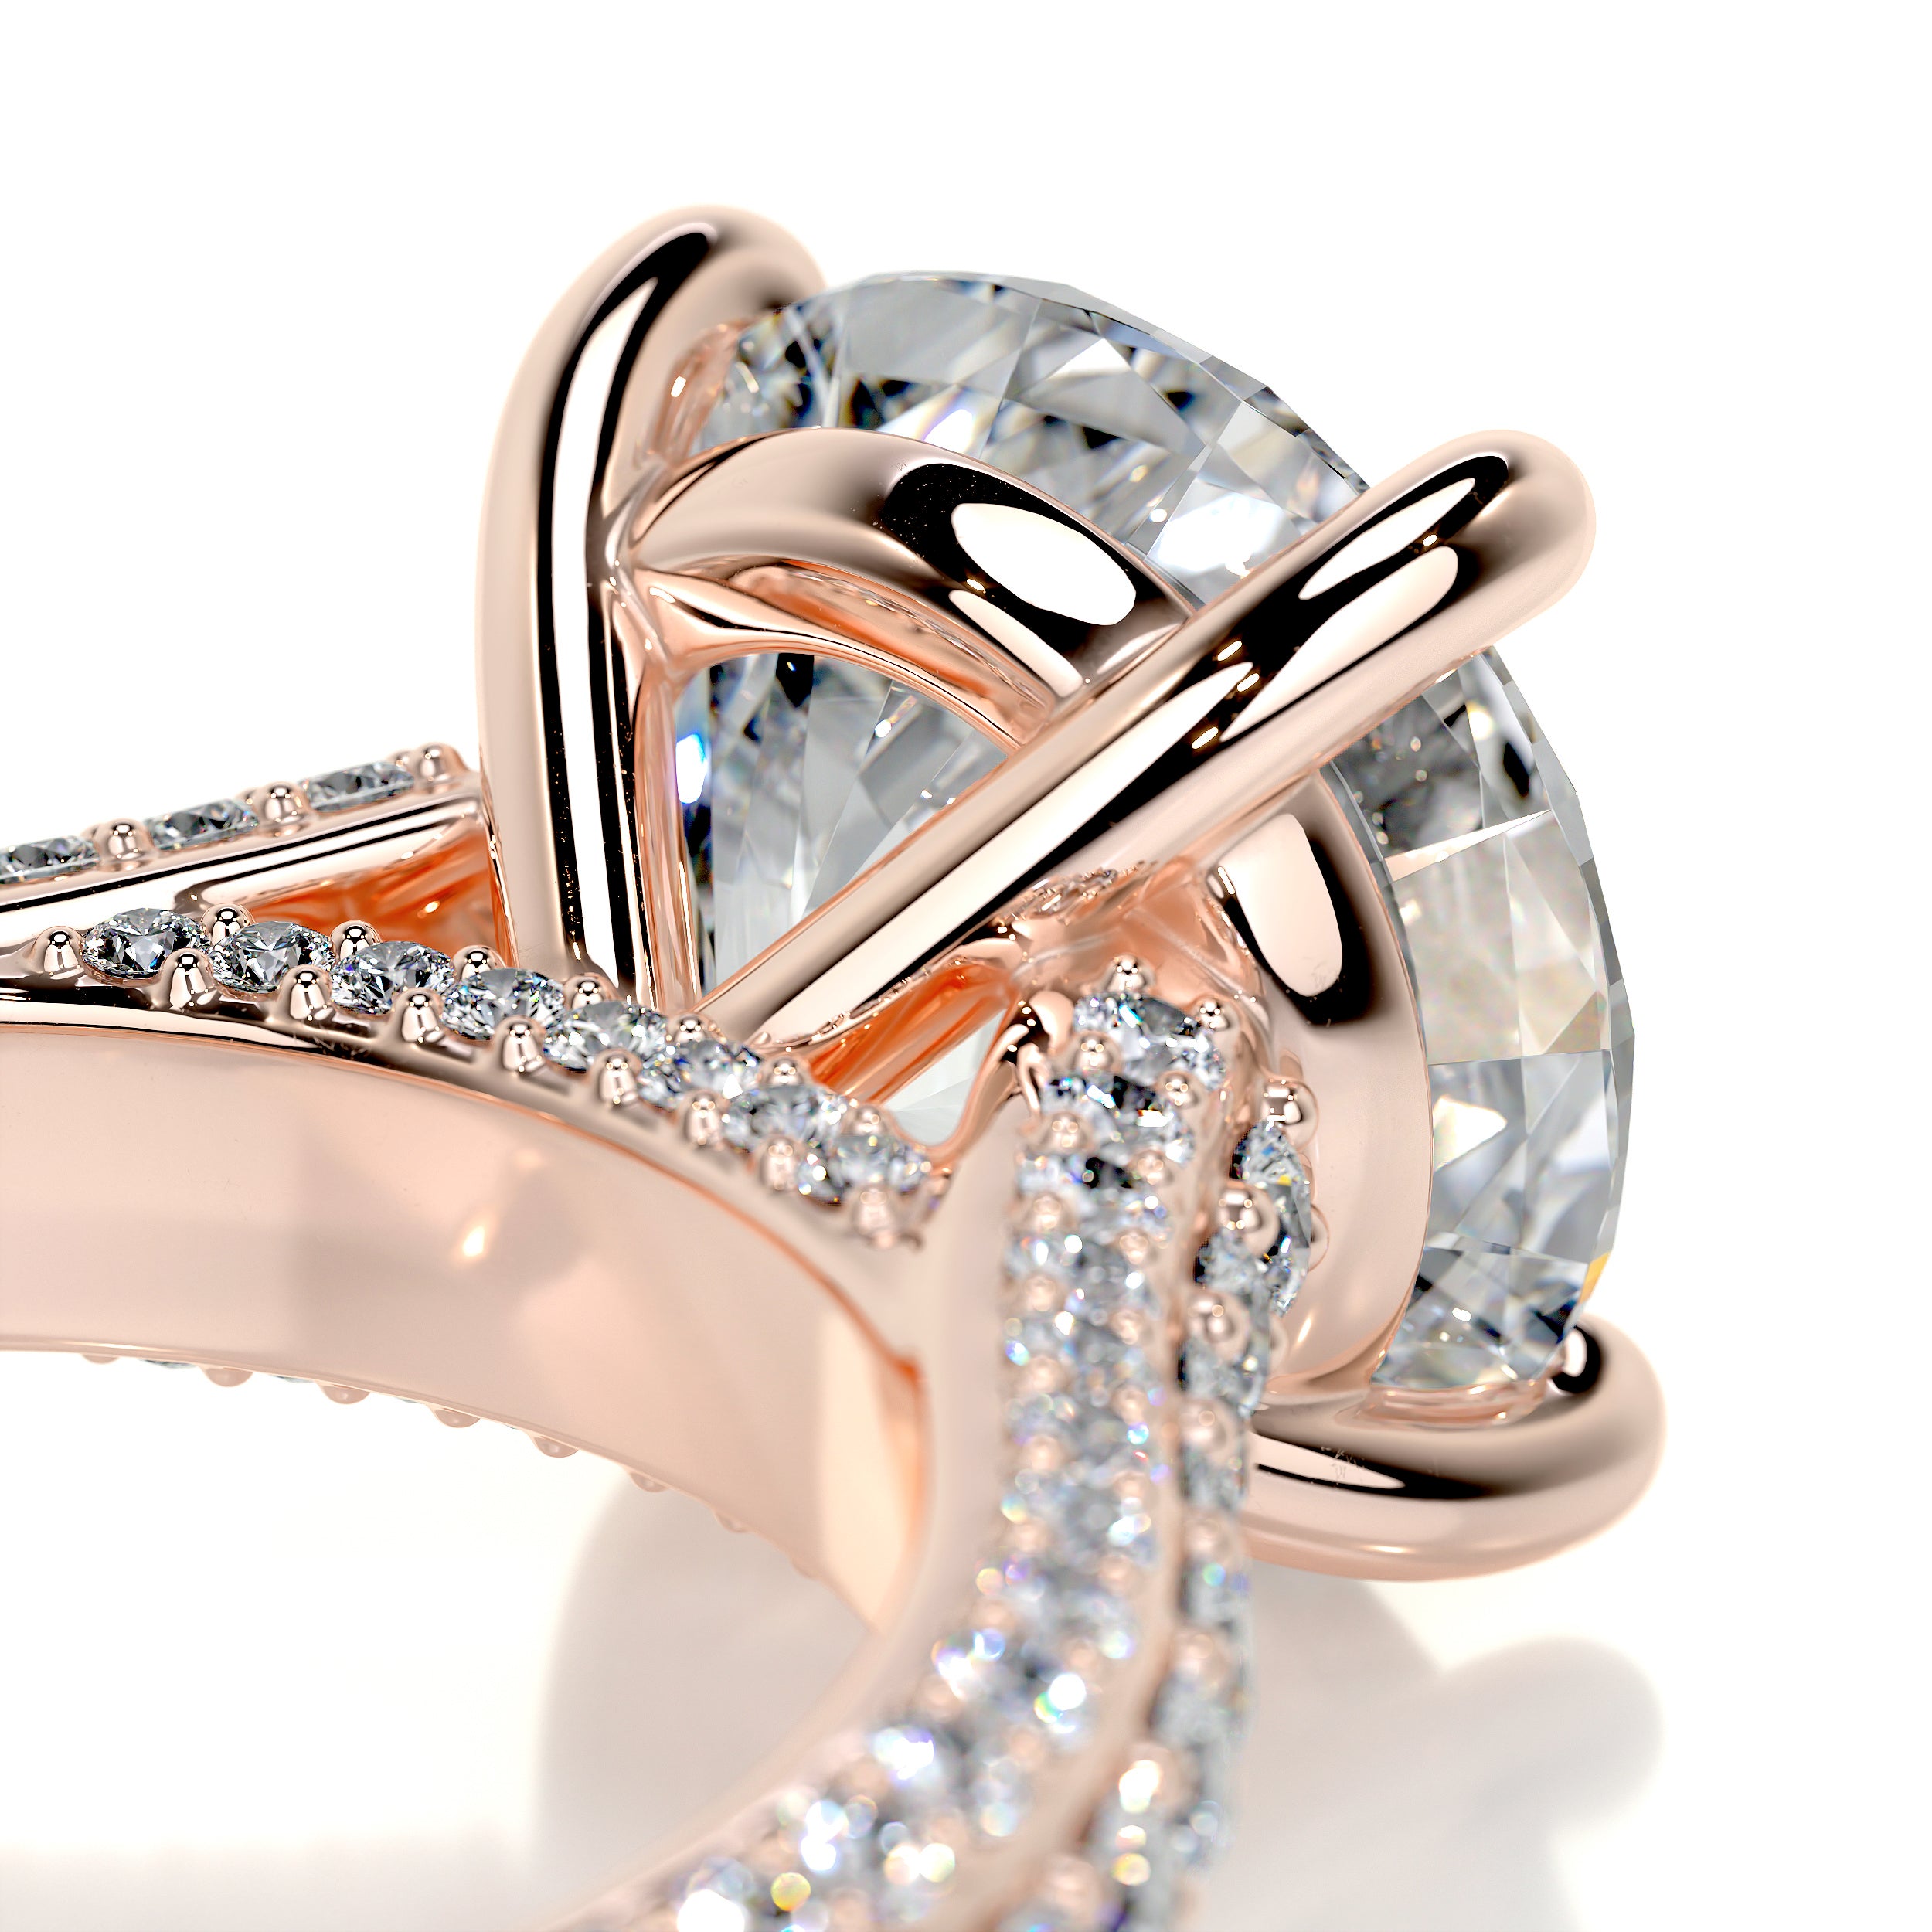 Janet Diamond Engagement Ring   (3.5 Carat) -14K Rose Gold